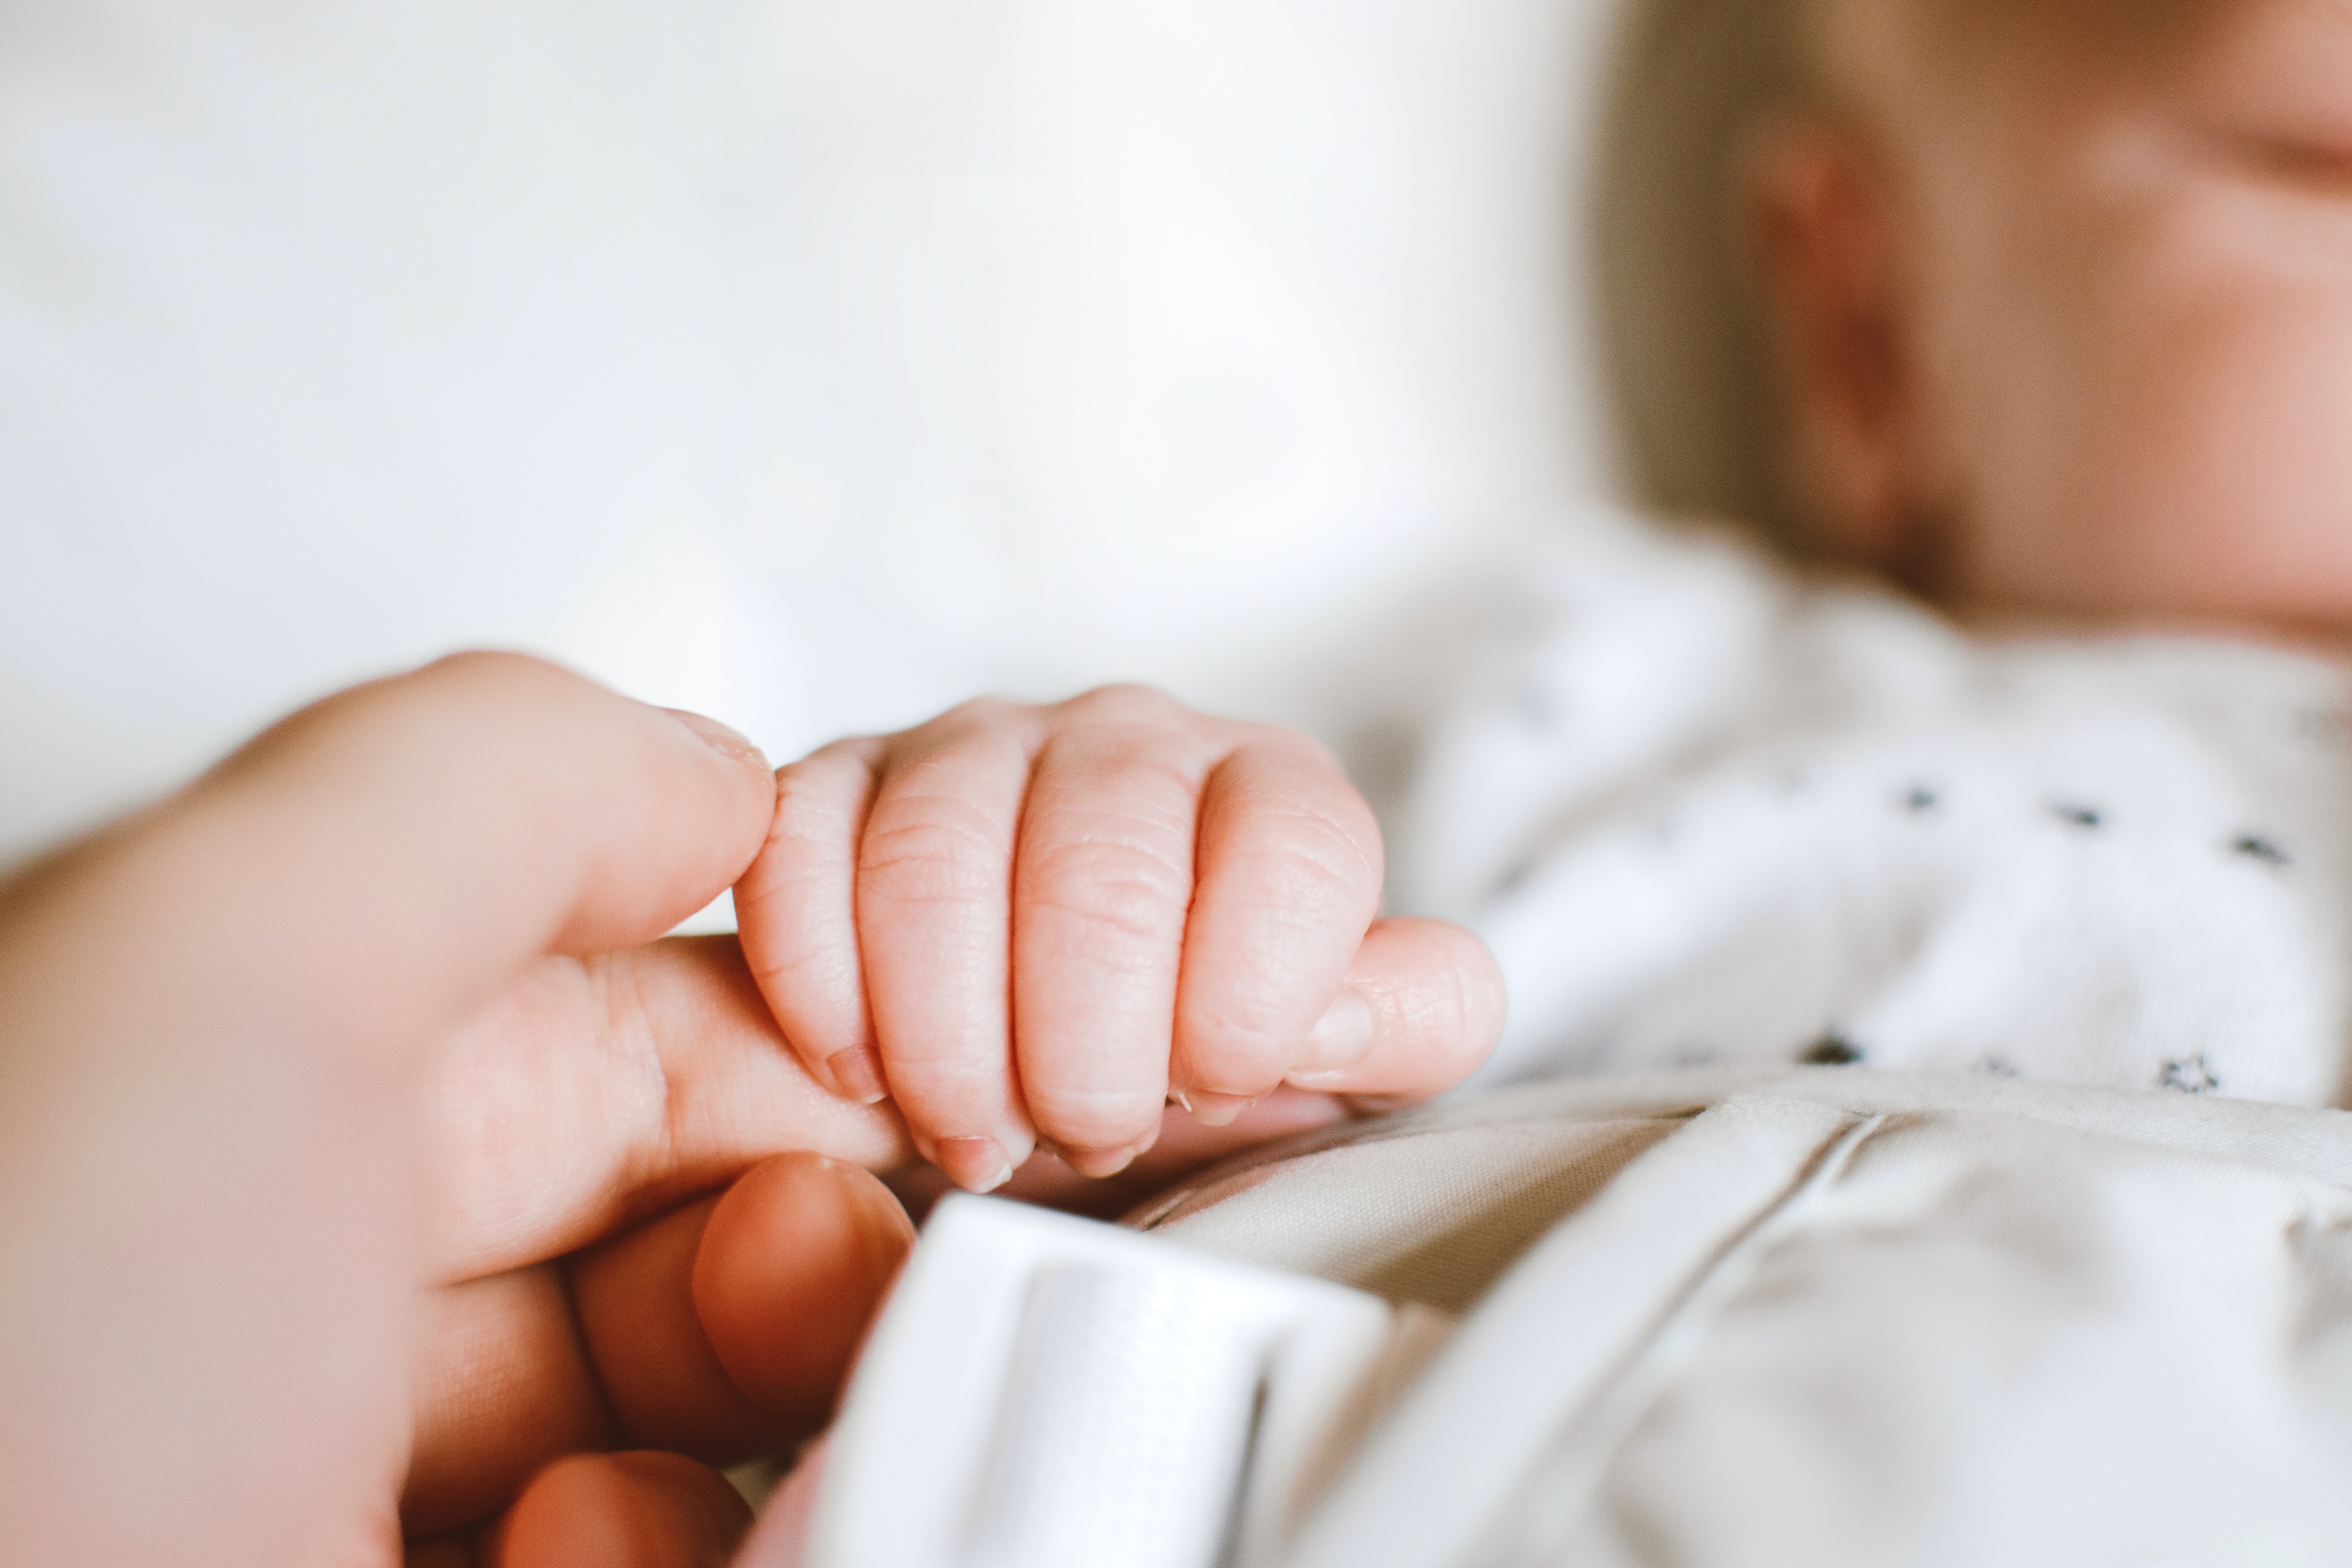 La main d'un bébé serrant le doigt d'une femme | Source : Pexels